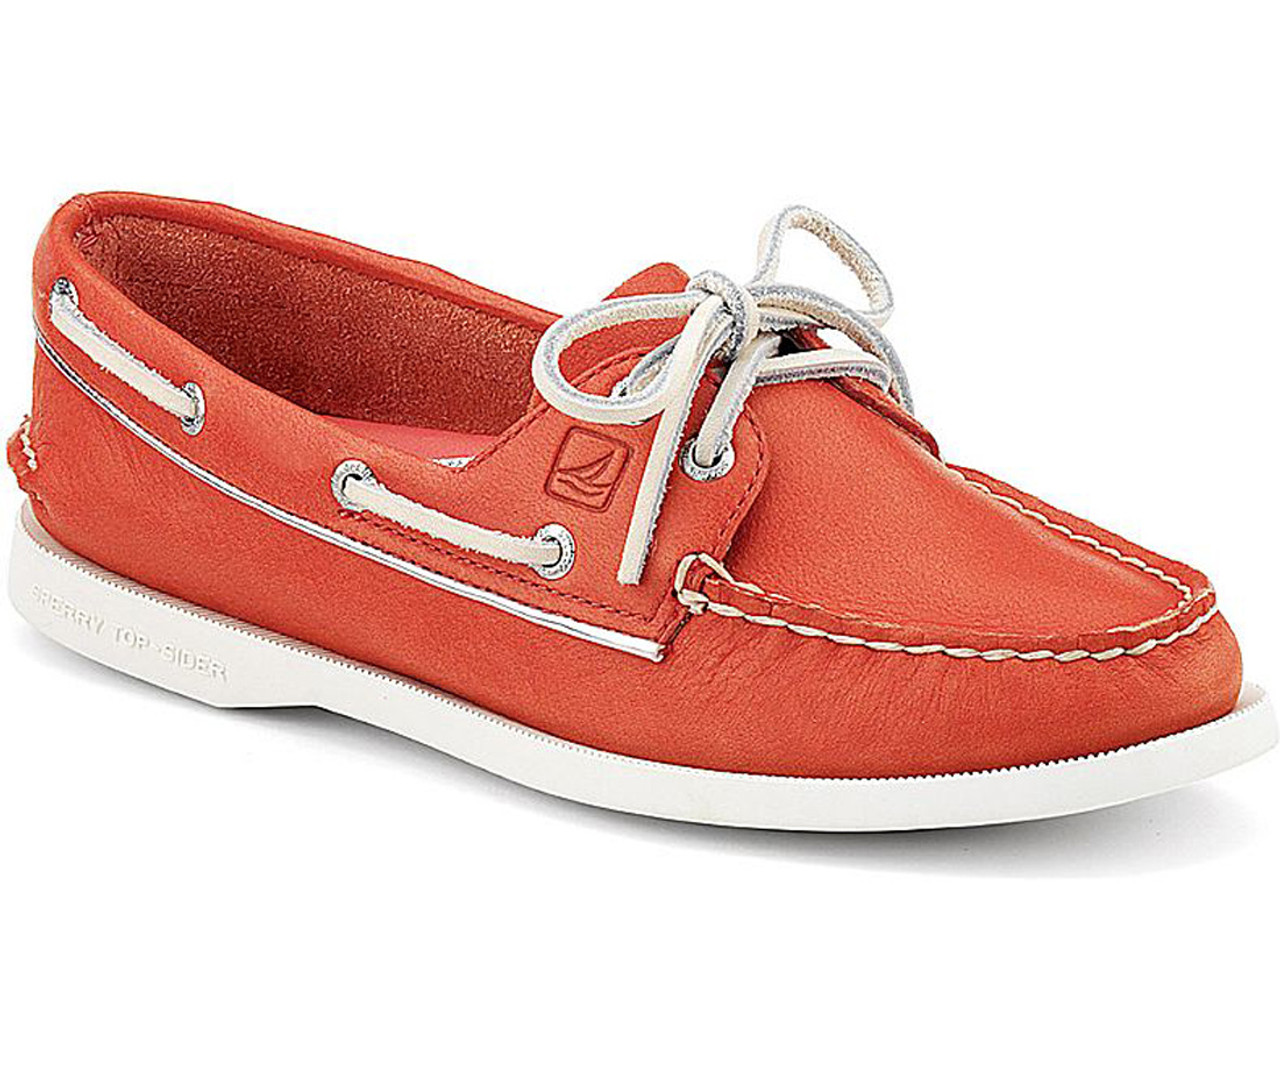 Sperry A/O Boat Shoes - Red | Discount Sperry Shoes & More Shoolu.com | Shoolu.com